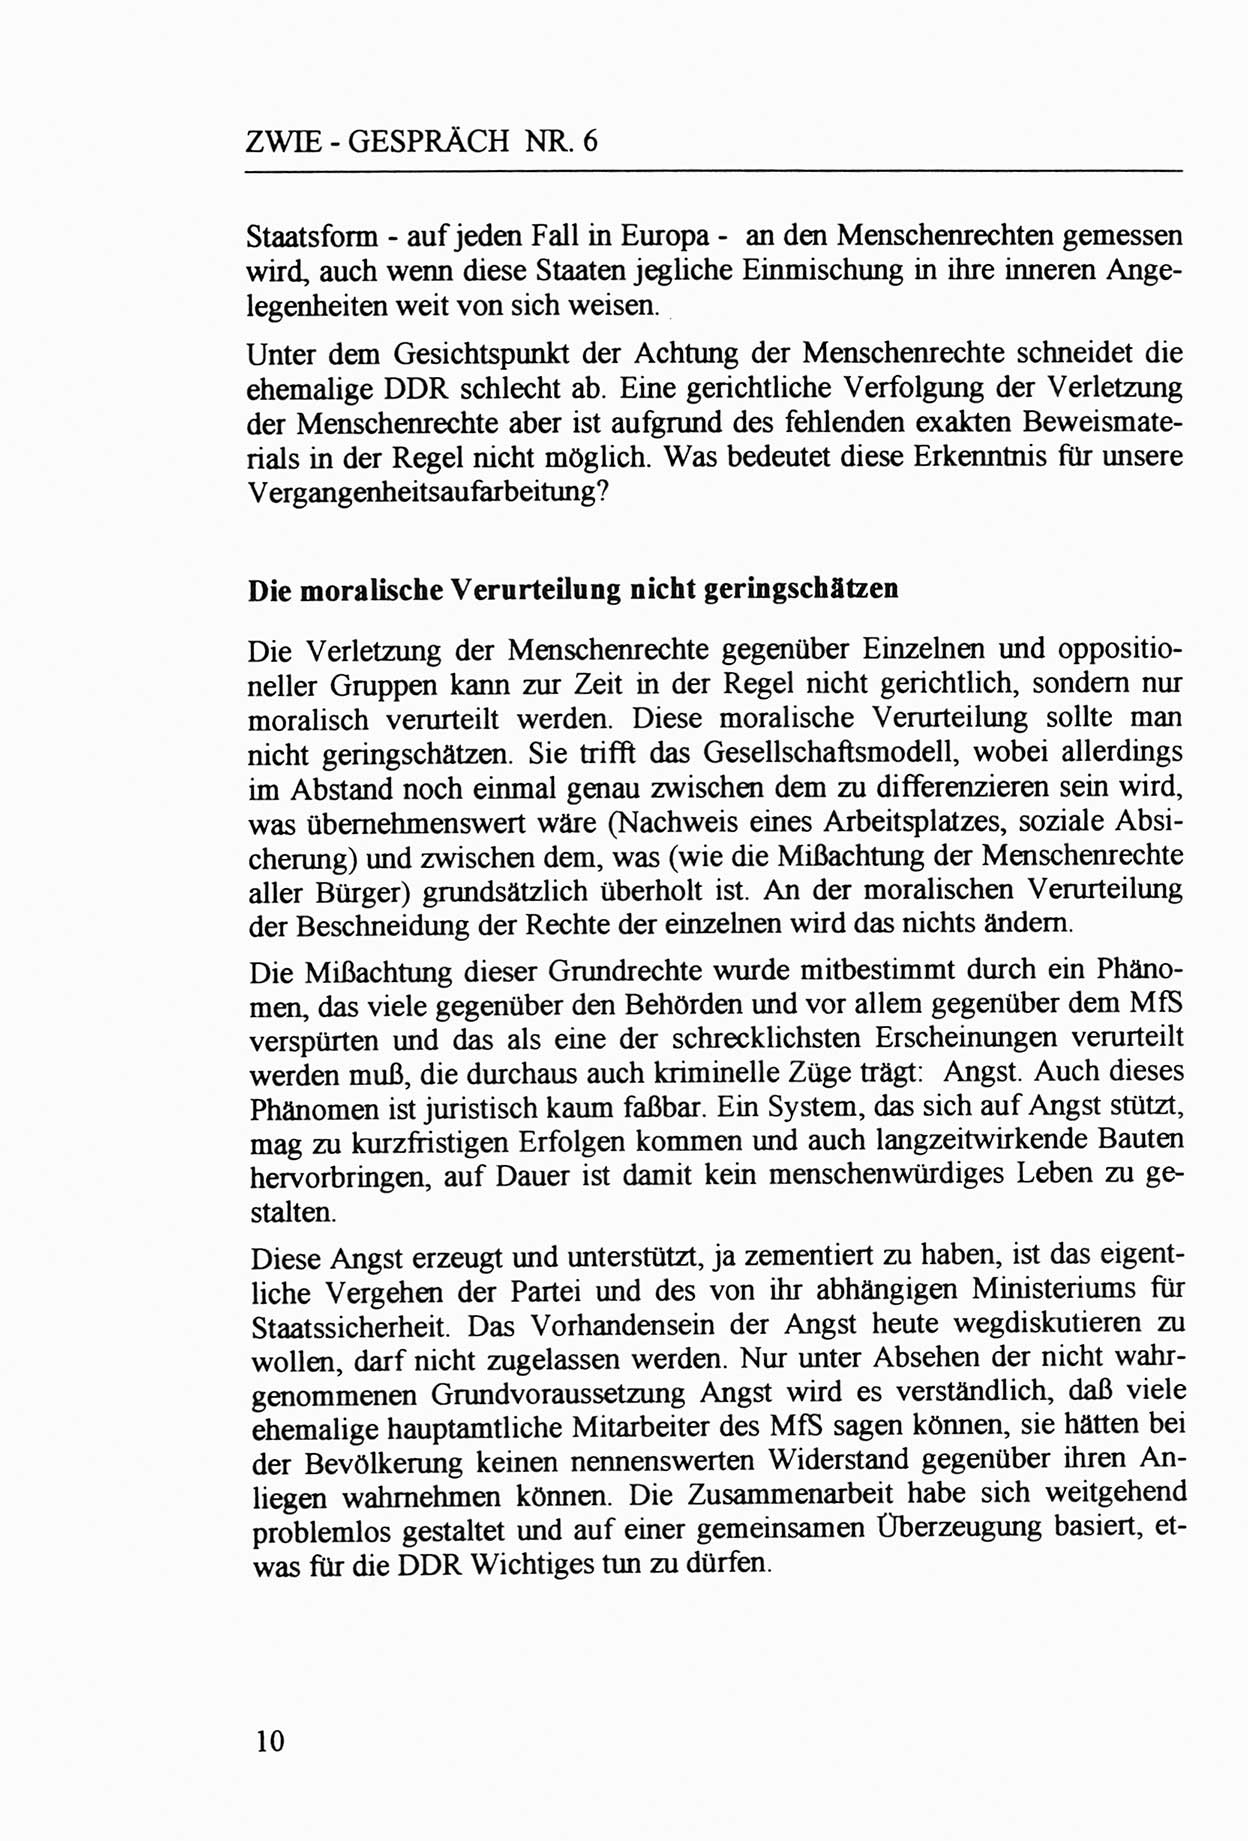 Zwie-Gespräch, Beiträge zur Aufarbeitung der Staatssicherheits-Vergangenheit [Deutsche Demokratische Republik (DDR)], Ausgabe Nr. 6, Berlin 1992, Seite 10 (Zwie-Gespr. Ausg. 6 1992, S. 10)